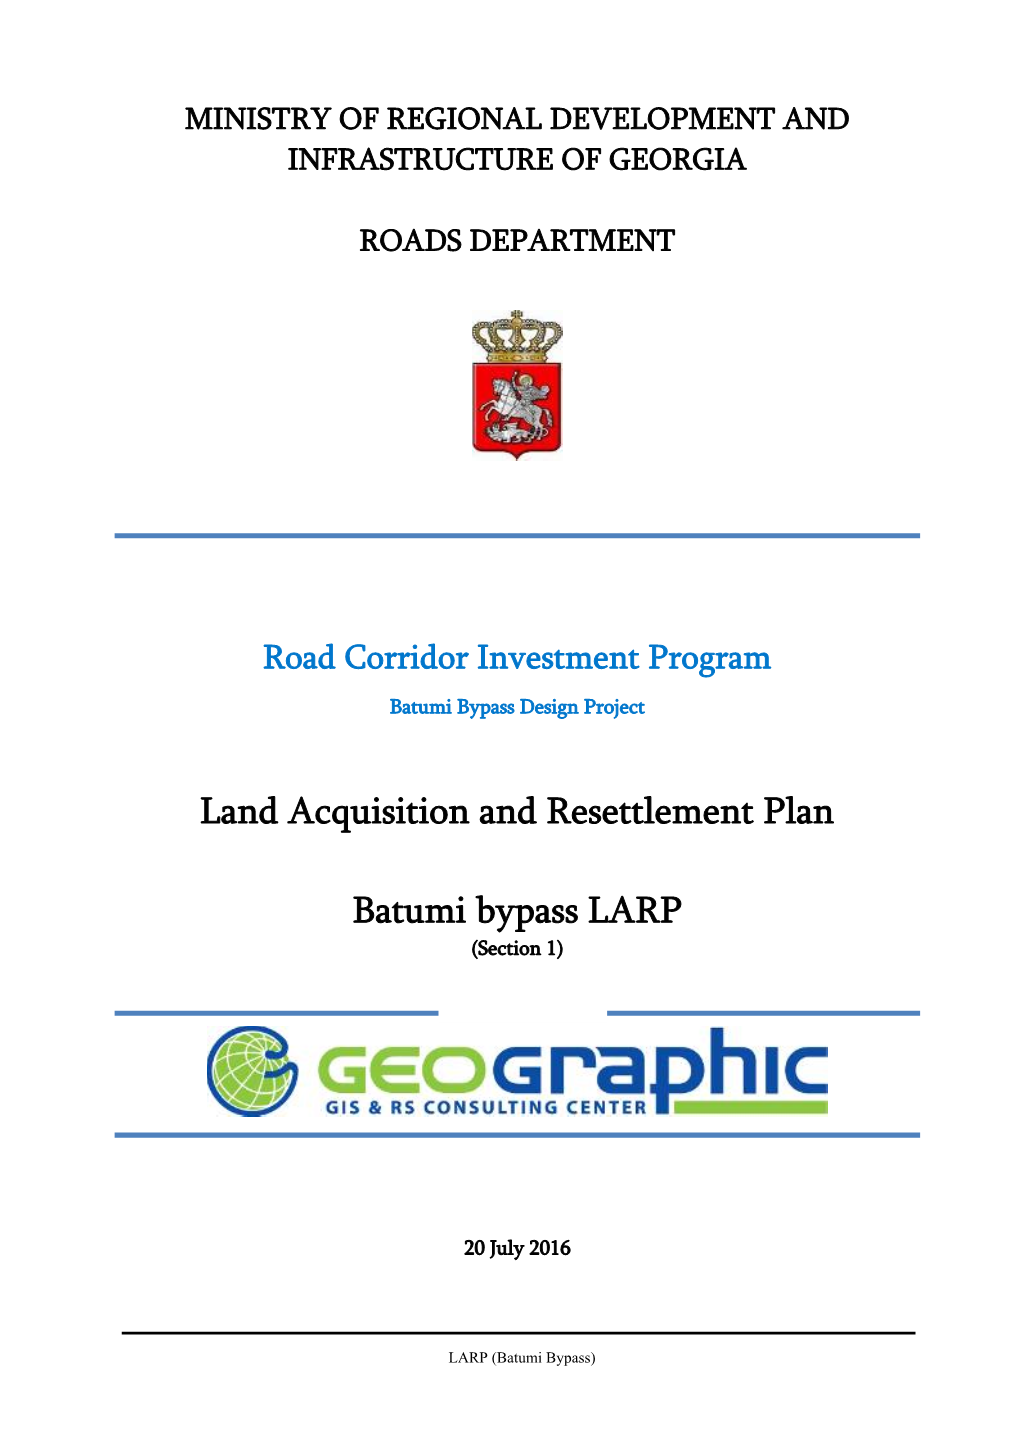 Land Acquisition and Resettlement Plan Batumi Bypass LARP